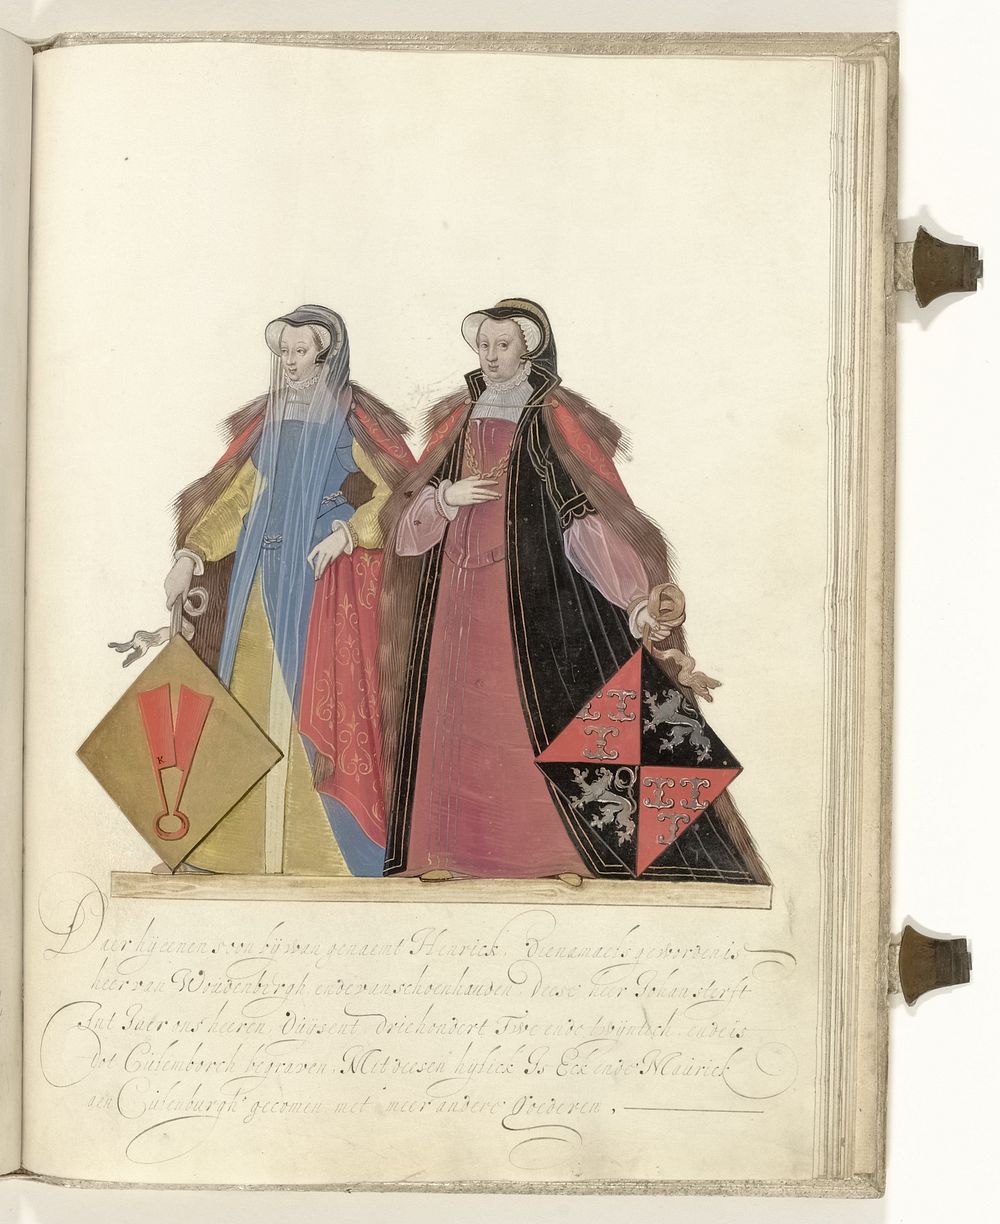 Twee vrouwen van Culemborg (c. 1600 - c. 1625) by Nicolaes de Kemp and anonymous